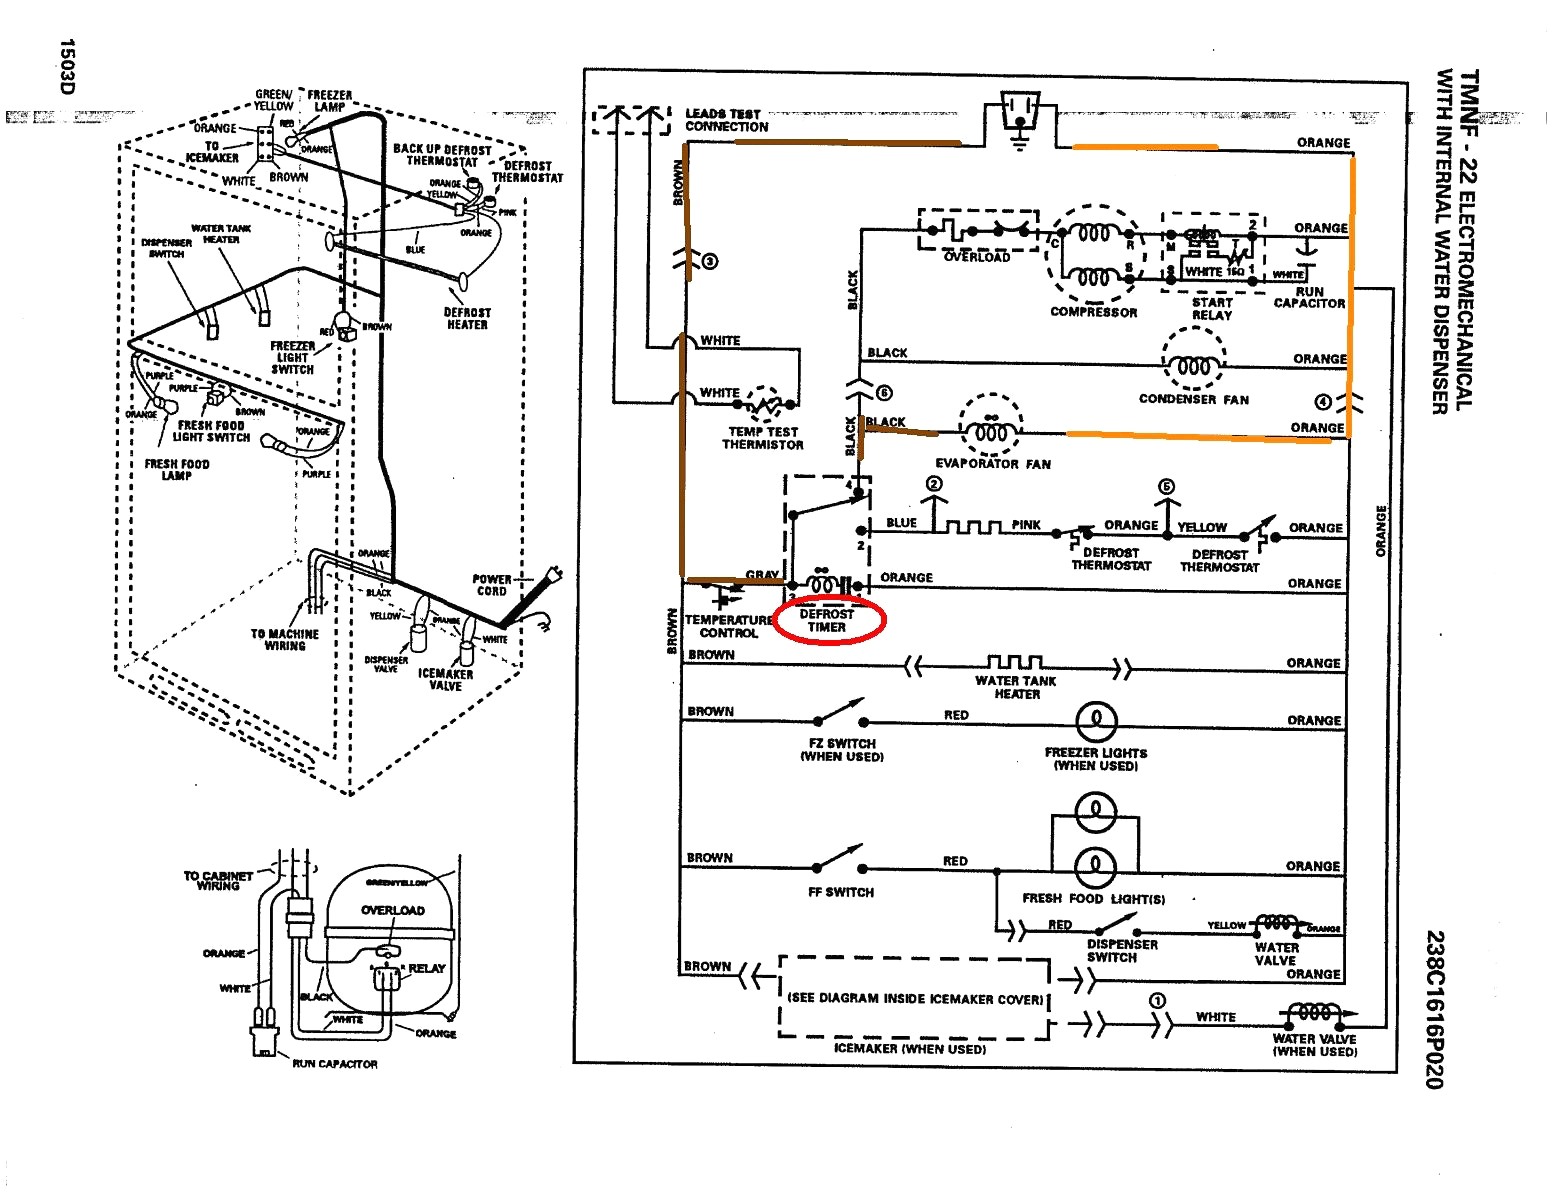 1948 ge refrigerator schematic today wiring diagram ge dryer wiring diagram jpg